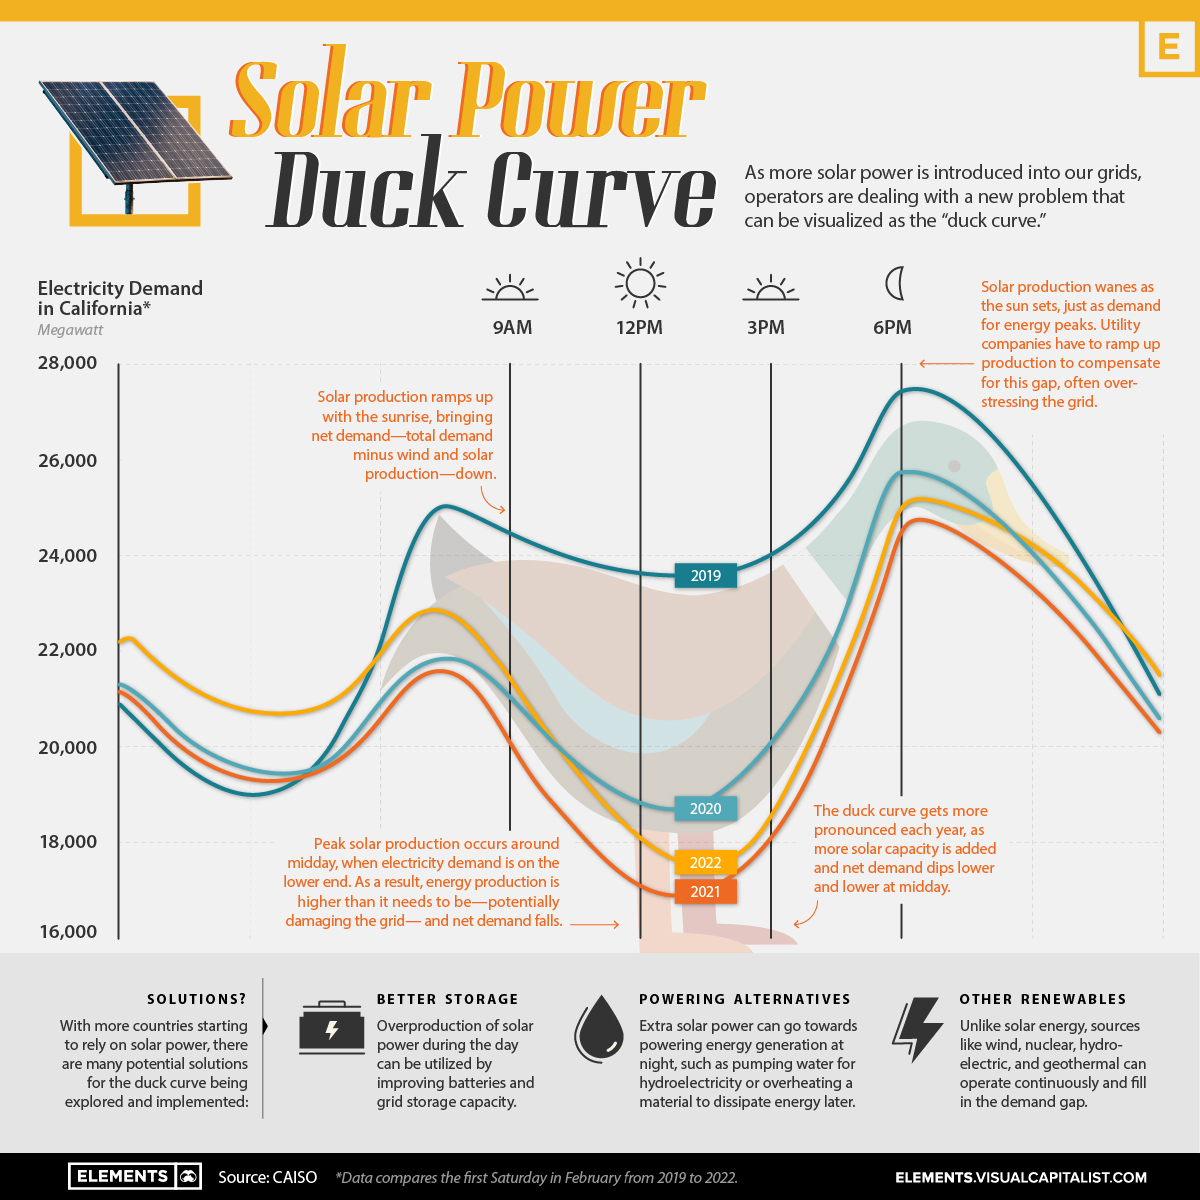 The Solar Power Duck Curve Explained